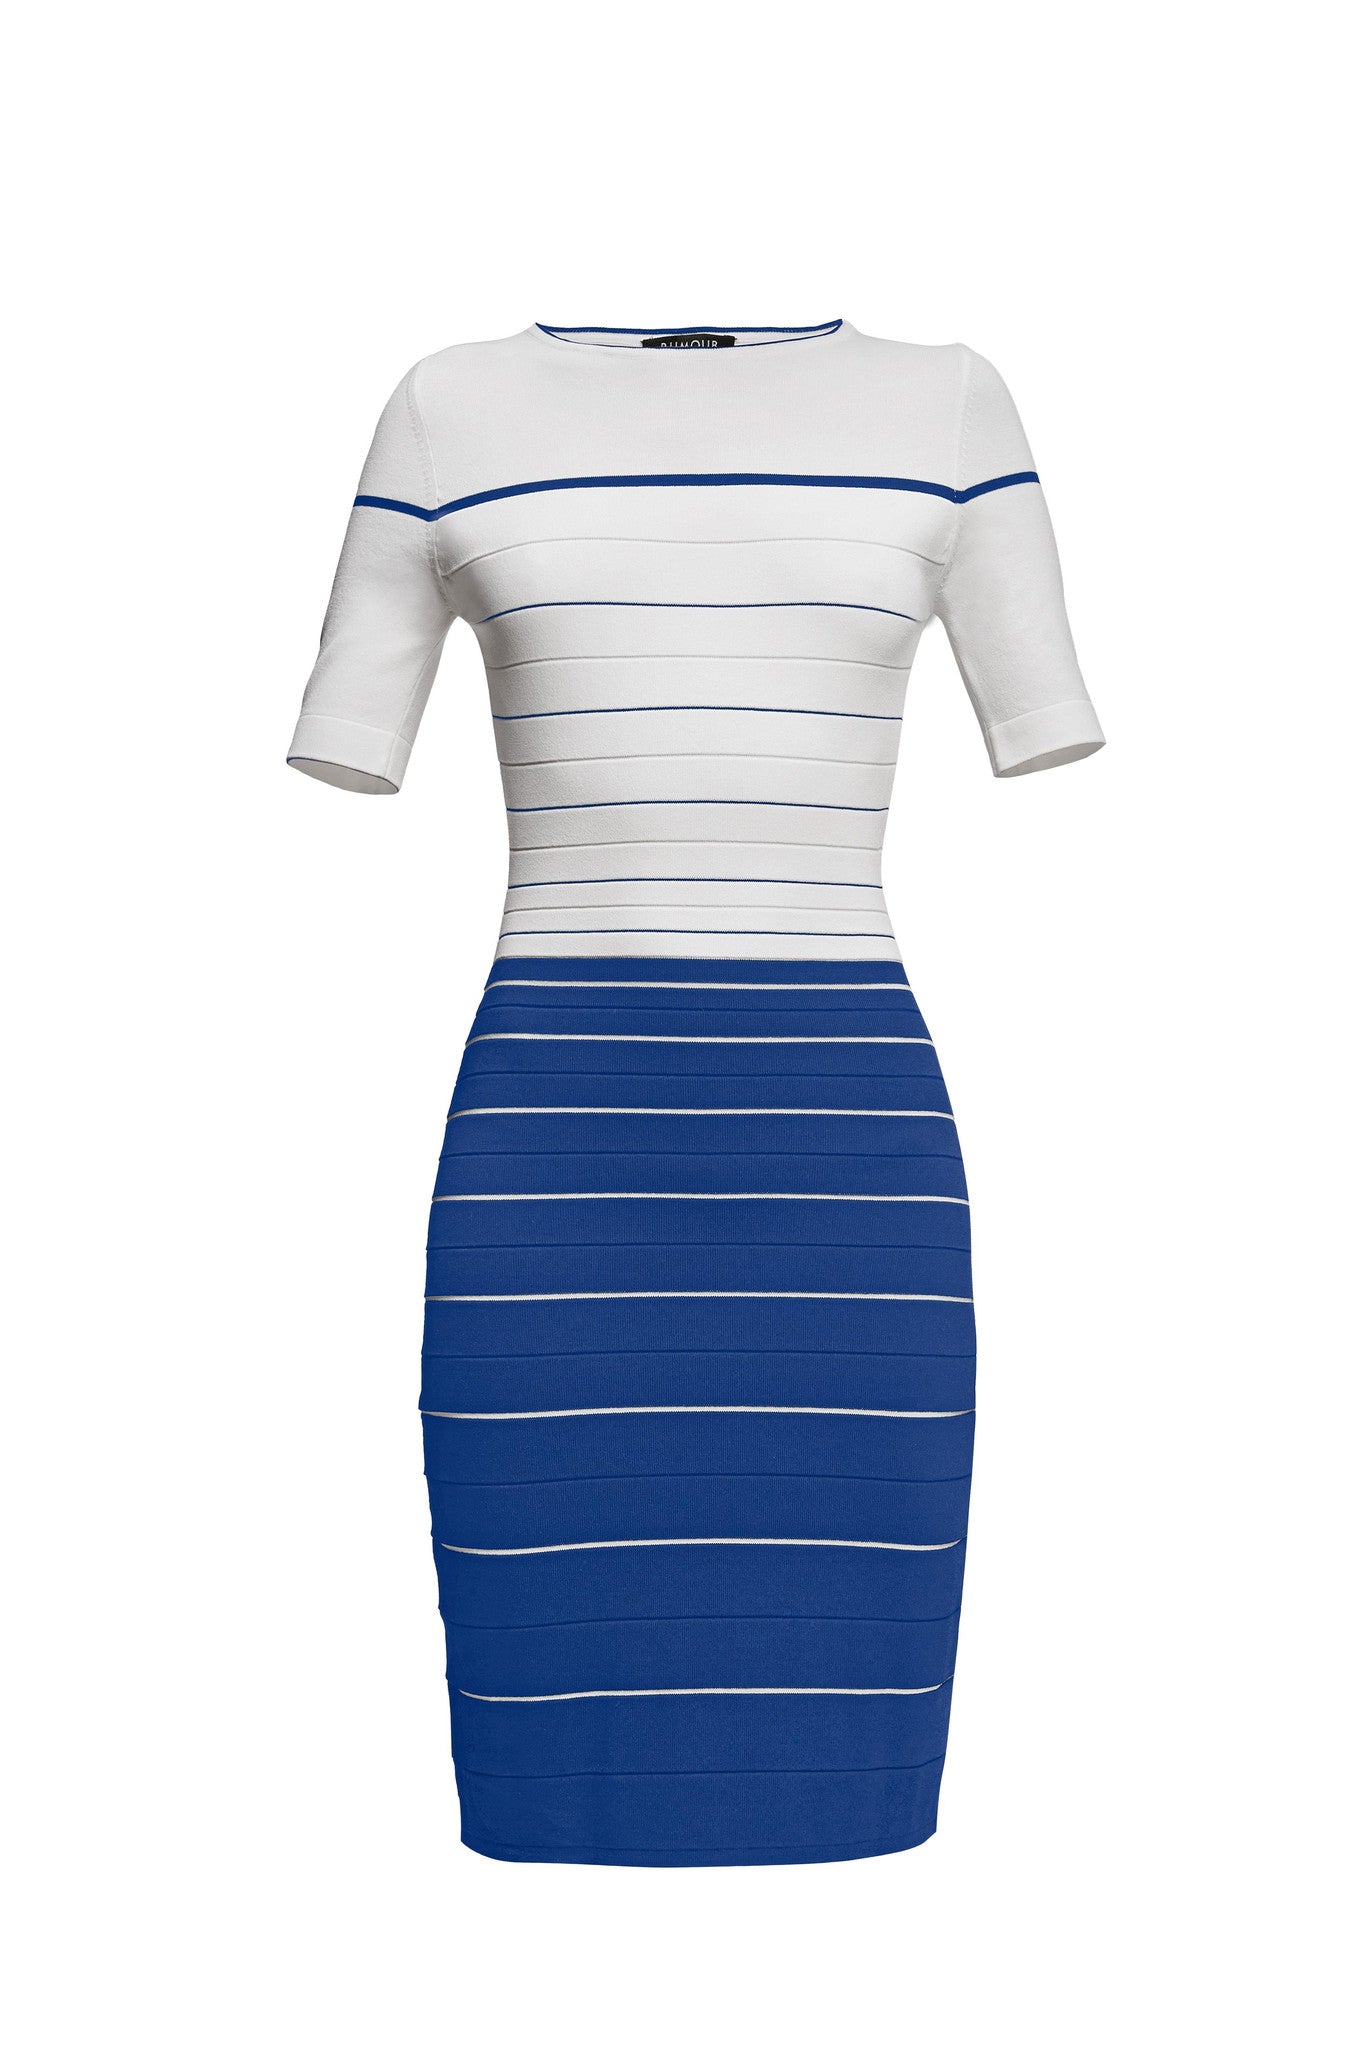 Striped Bodycon Dress in Blue and Cream